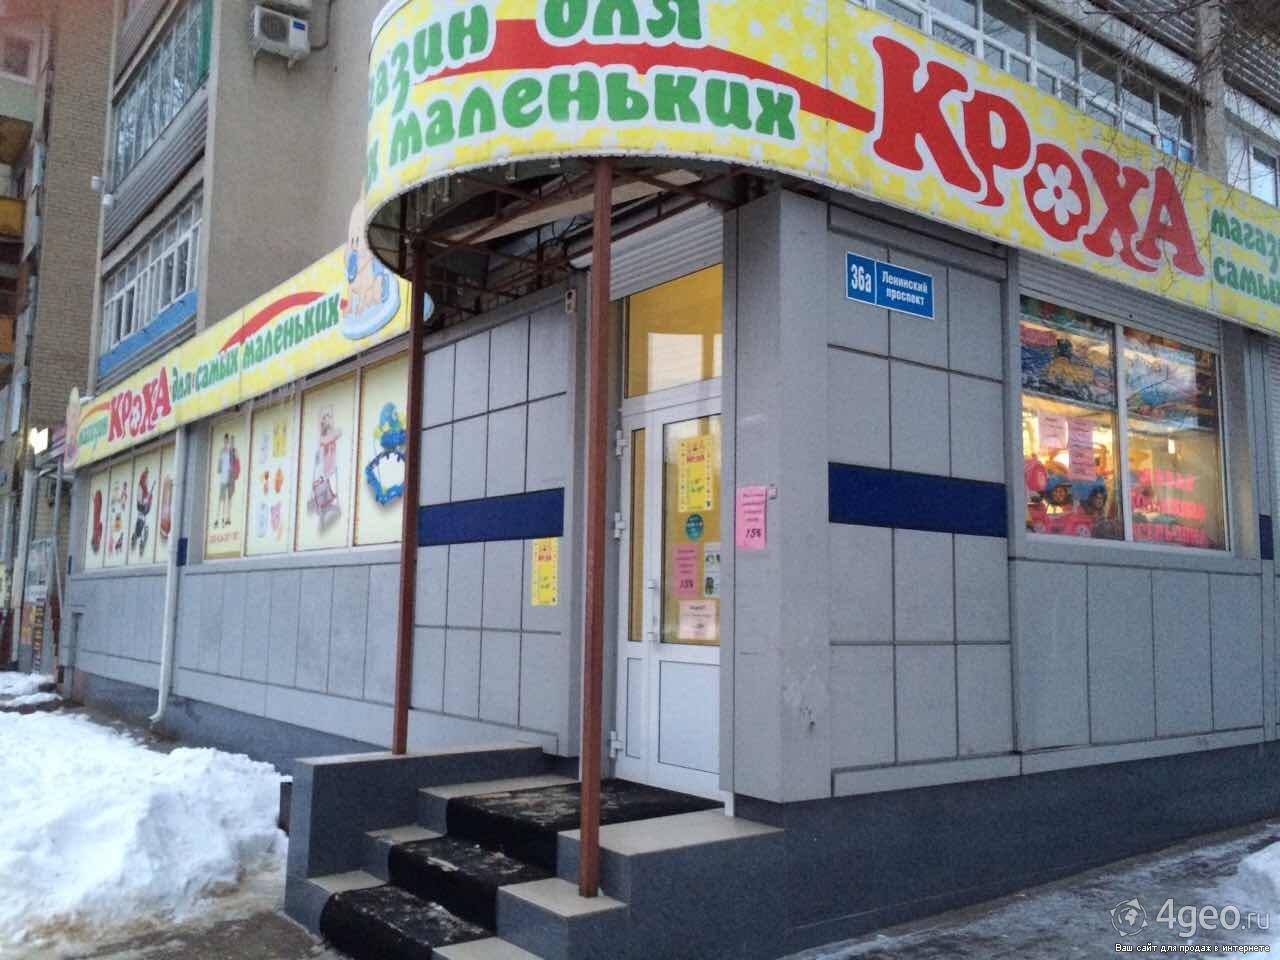 Магазин Кроха Псков